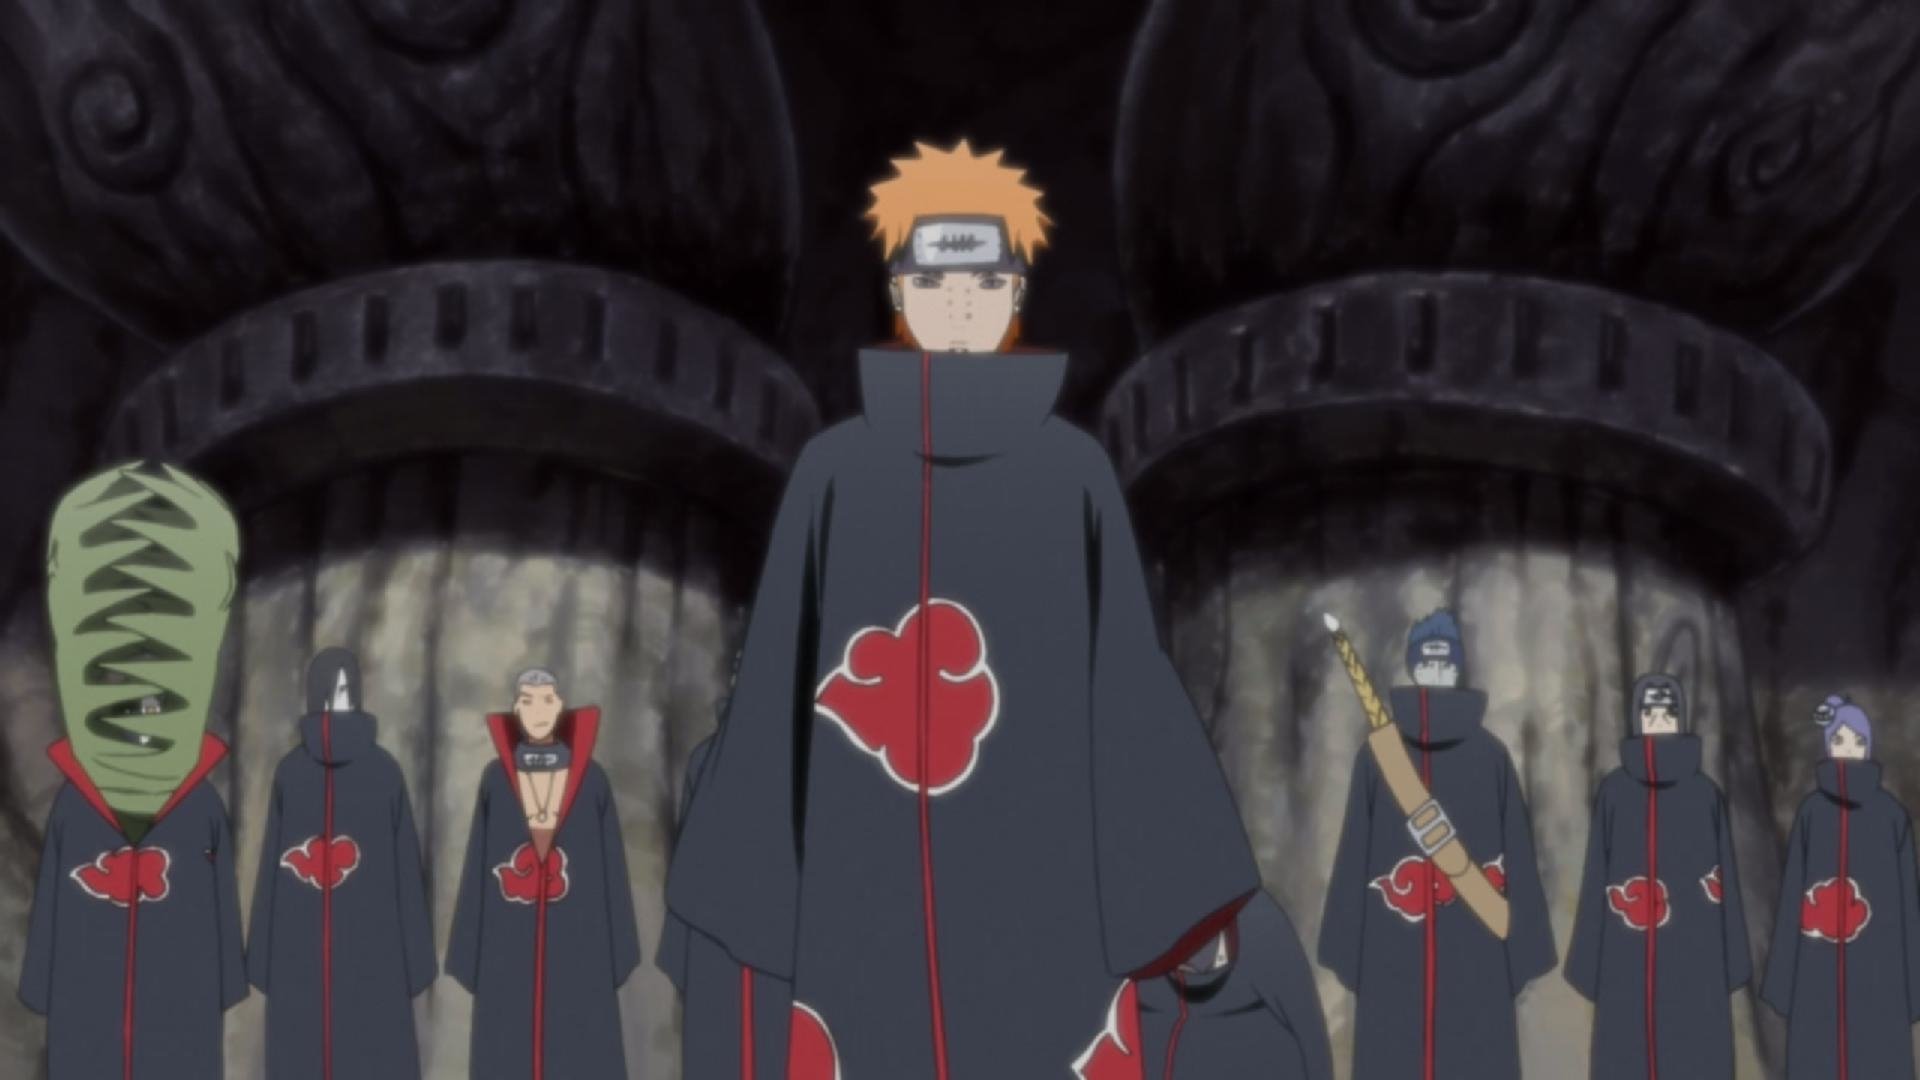 Naruto - Conheça a idade dos membros da Akatsuki - Critical Hits